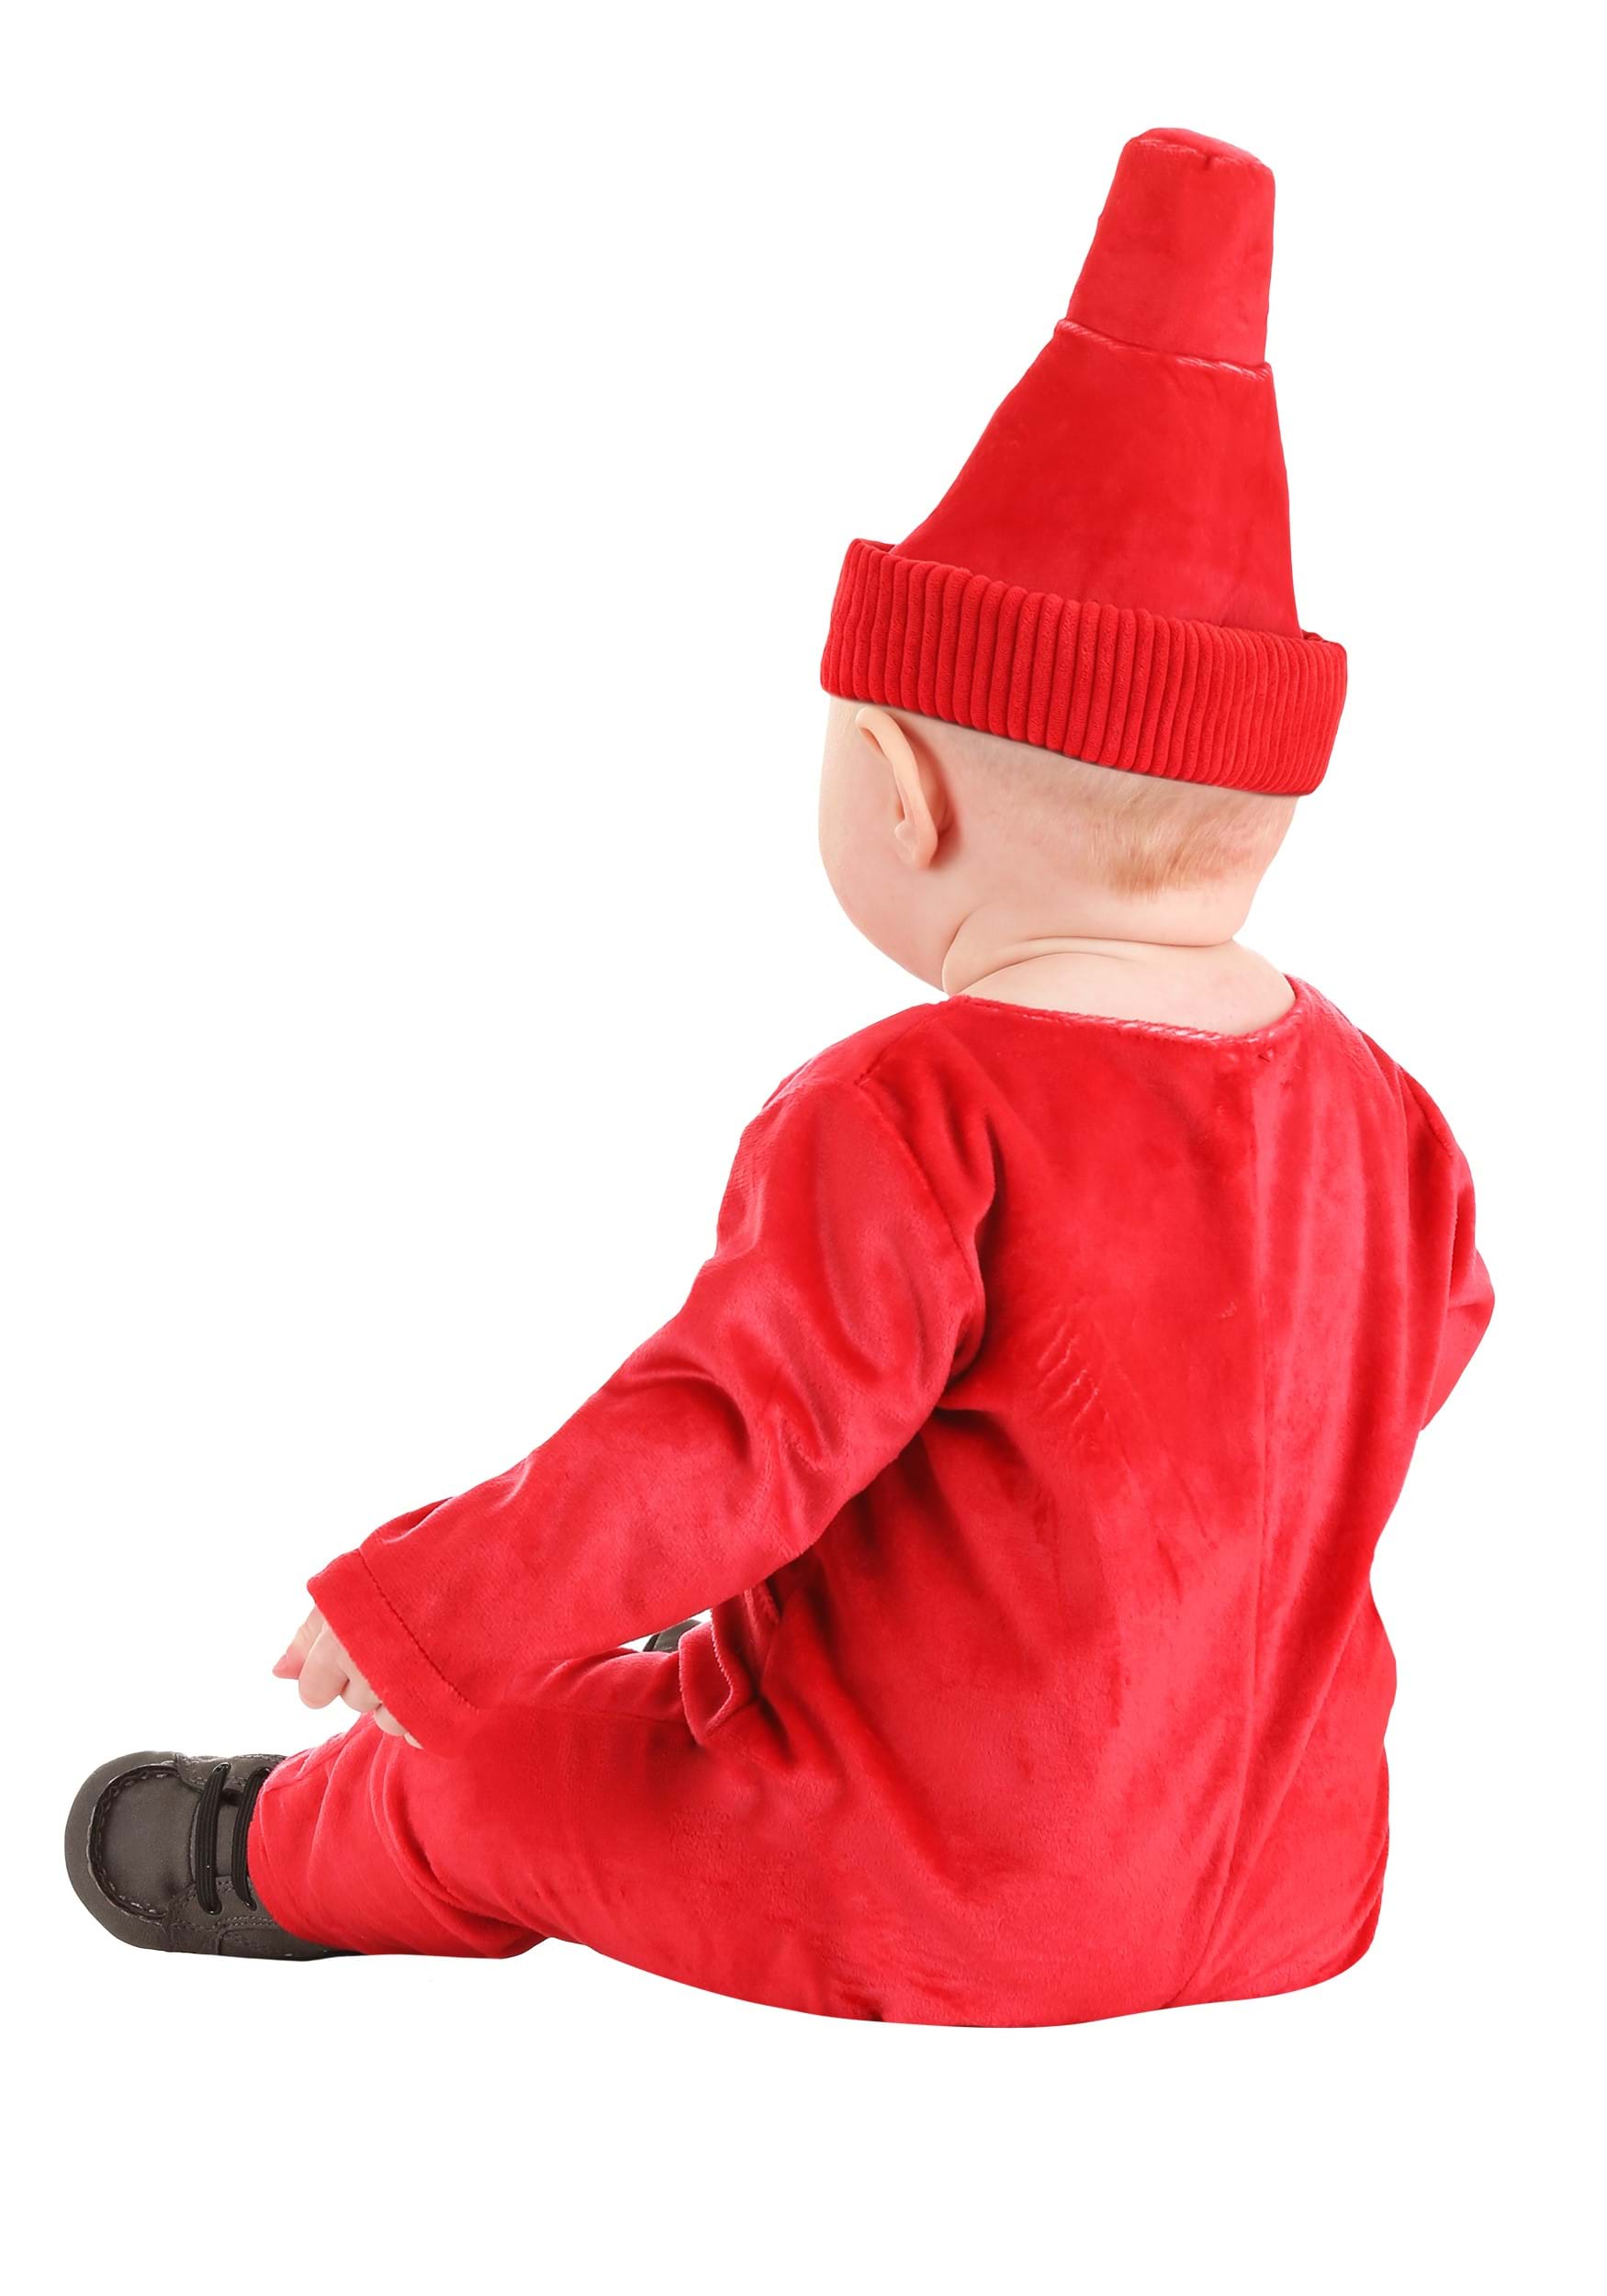 Ketchup Bottle Infant Costume